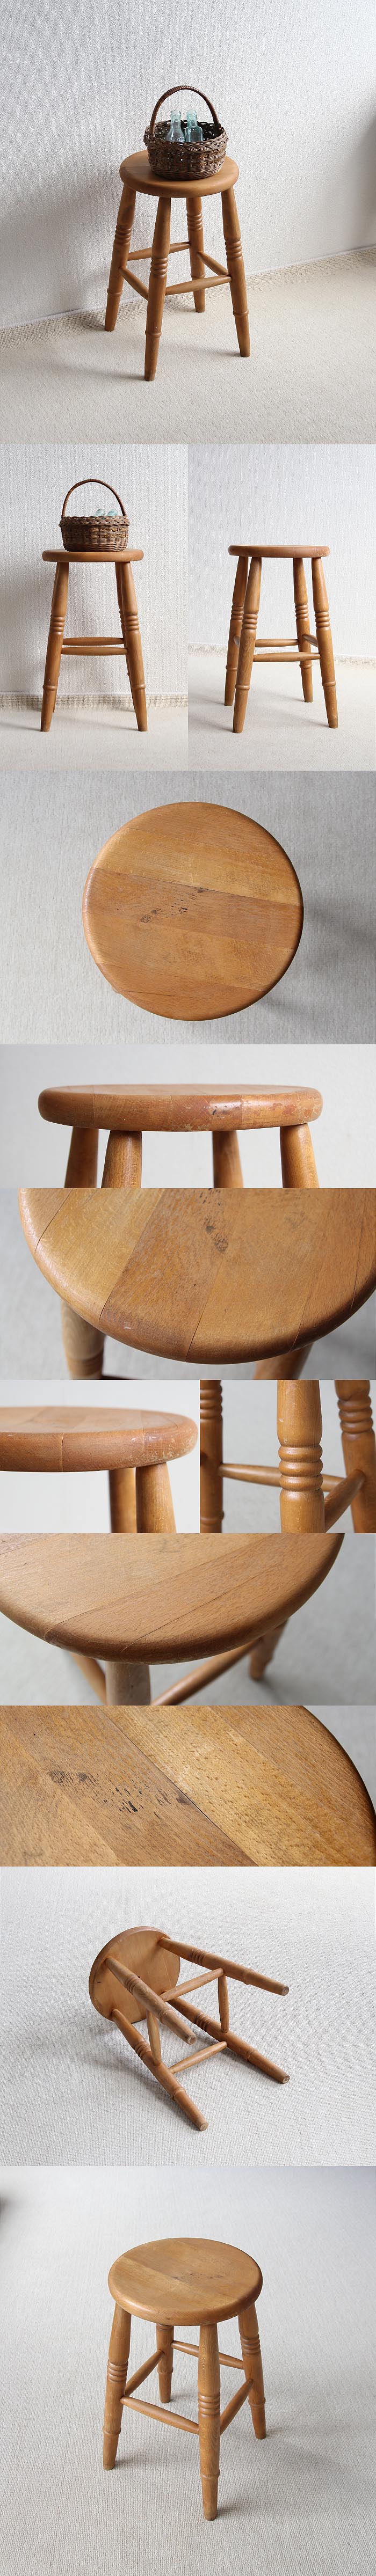 イギリス ヴィンテージ スツール 丸椅子 木製 カントリー アンティーク 家具「花台にも」V-677